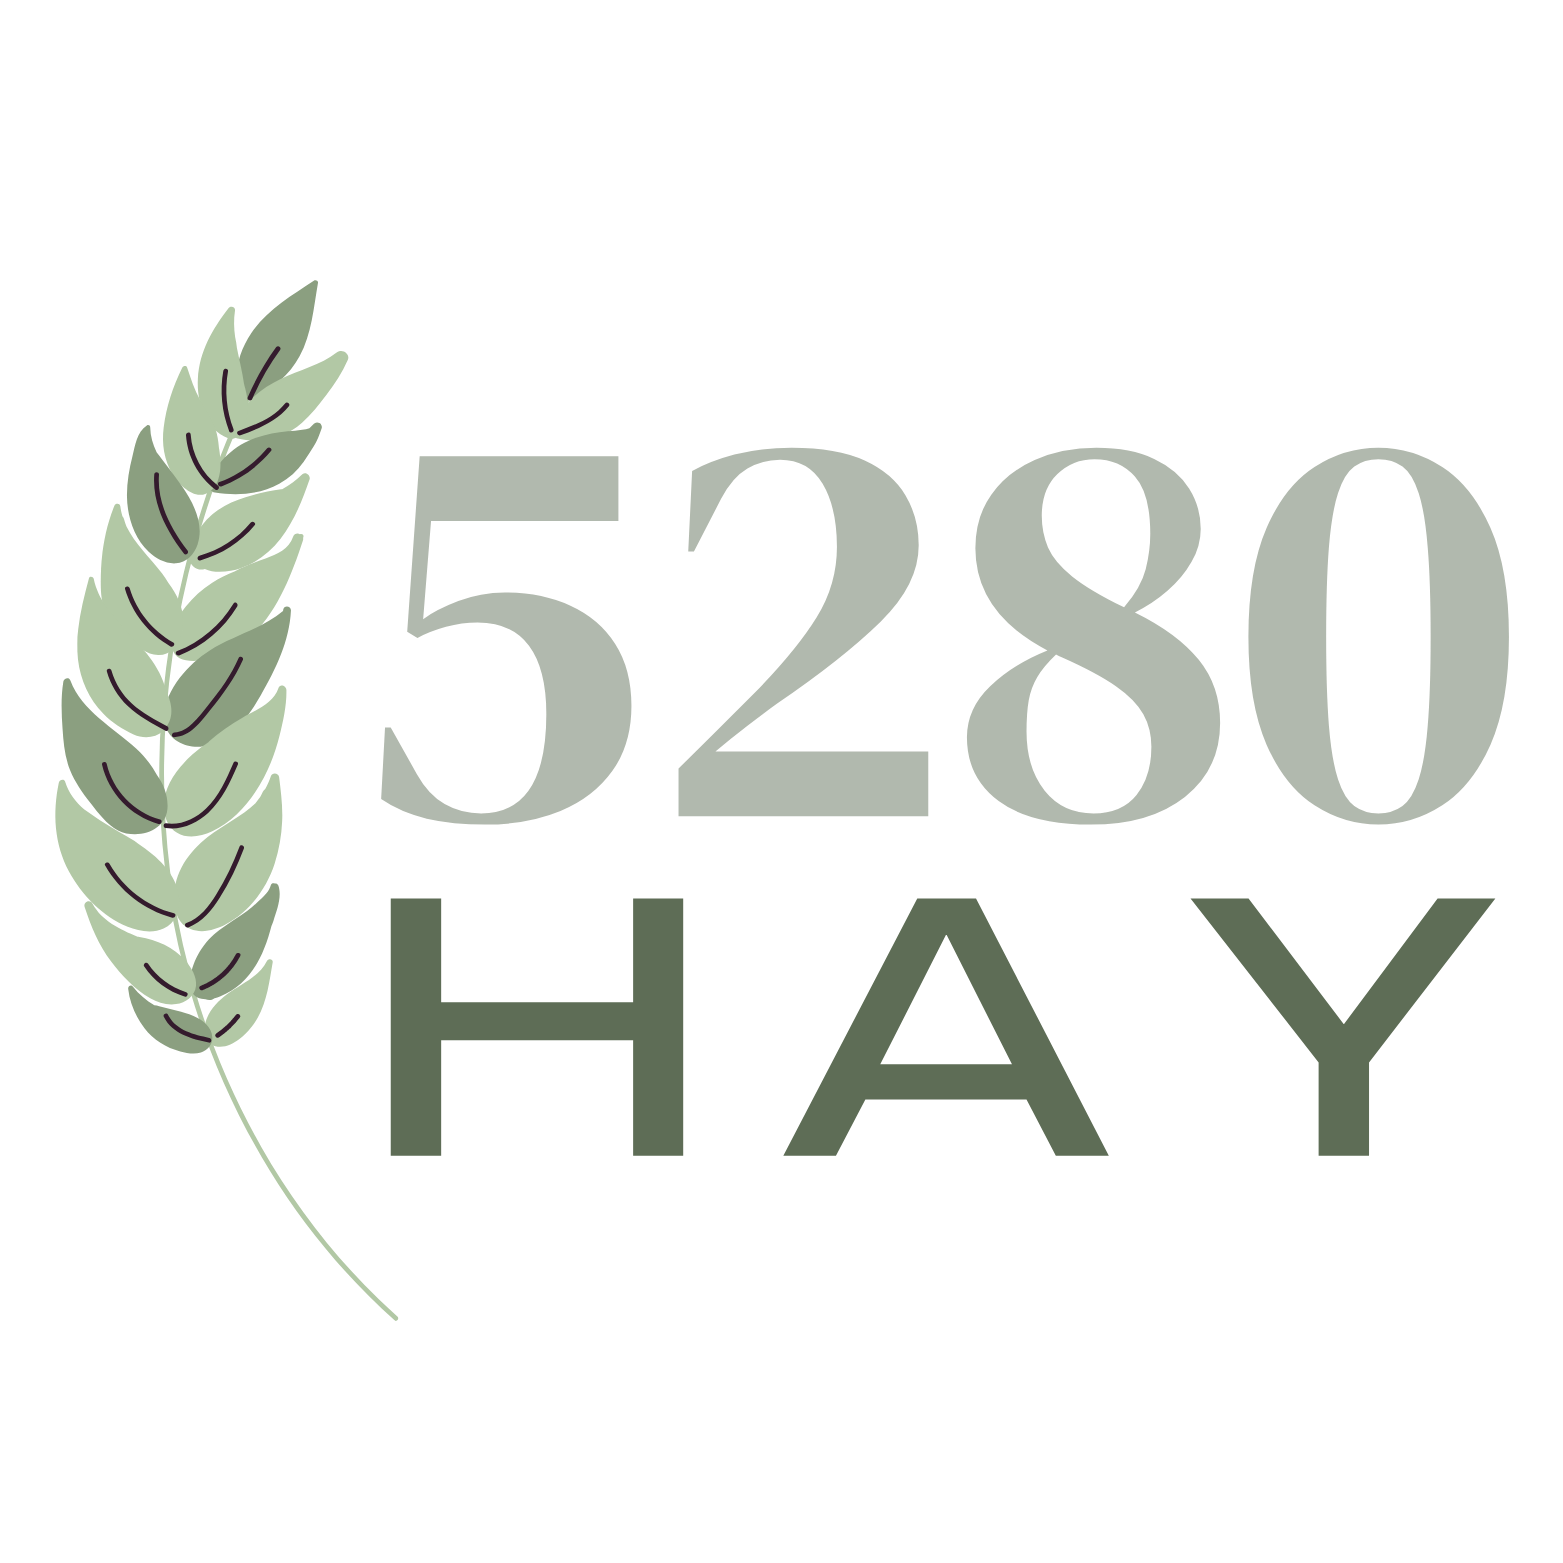 5280 Hay Logo - Quality Hay in Colorado